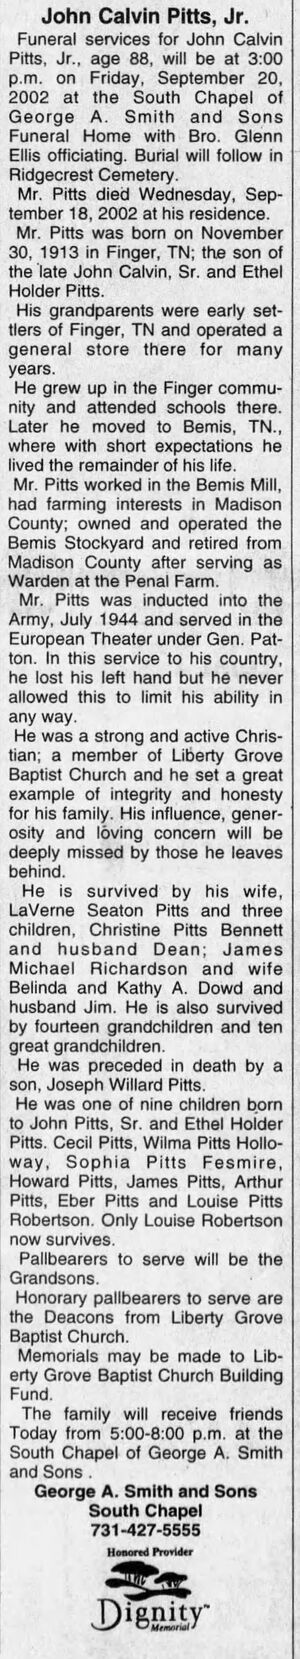 Obituary for John Calvin Pitts, Jr.